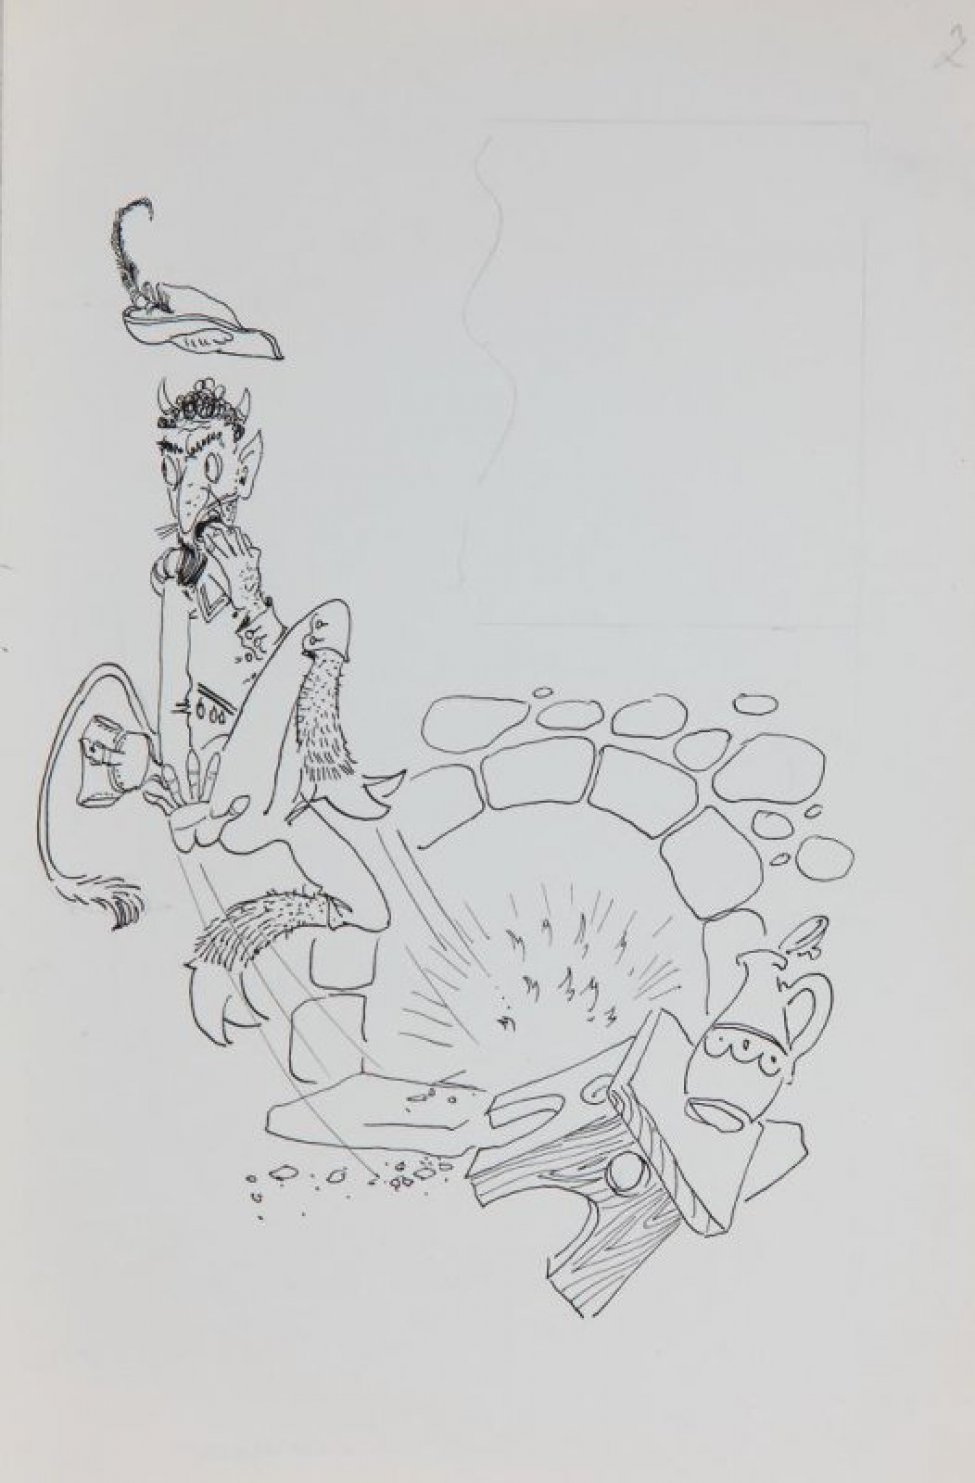 Стилизованное изображение черта в охотничьем костюме, пылающего камина, падающих скамейки и кувшина. В верхней части - графитным карандашом разметка для текста.